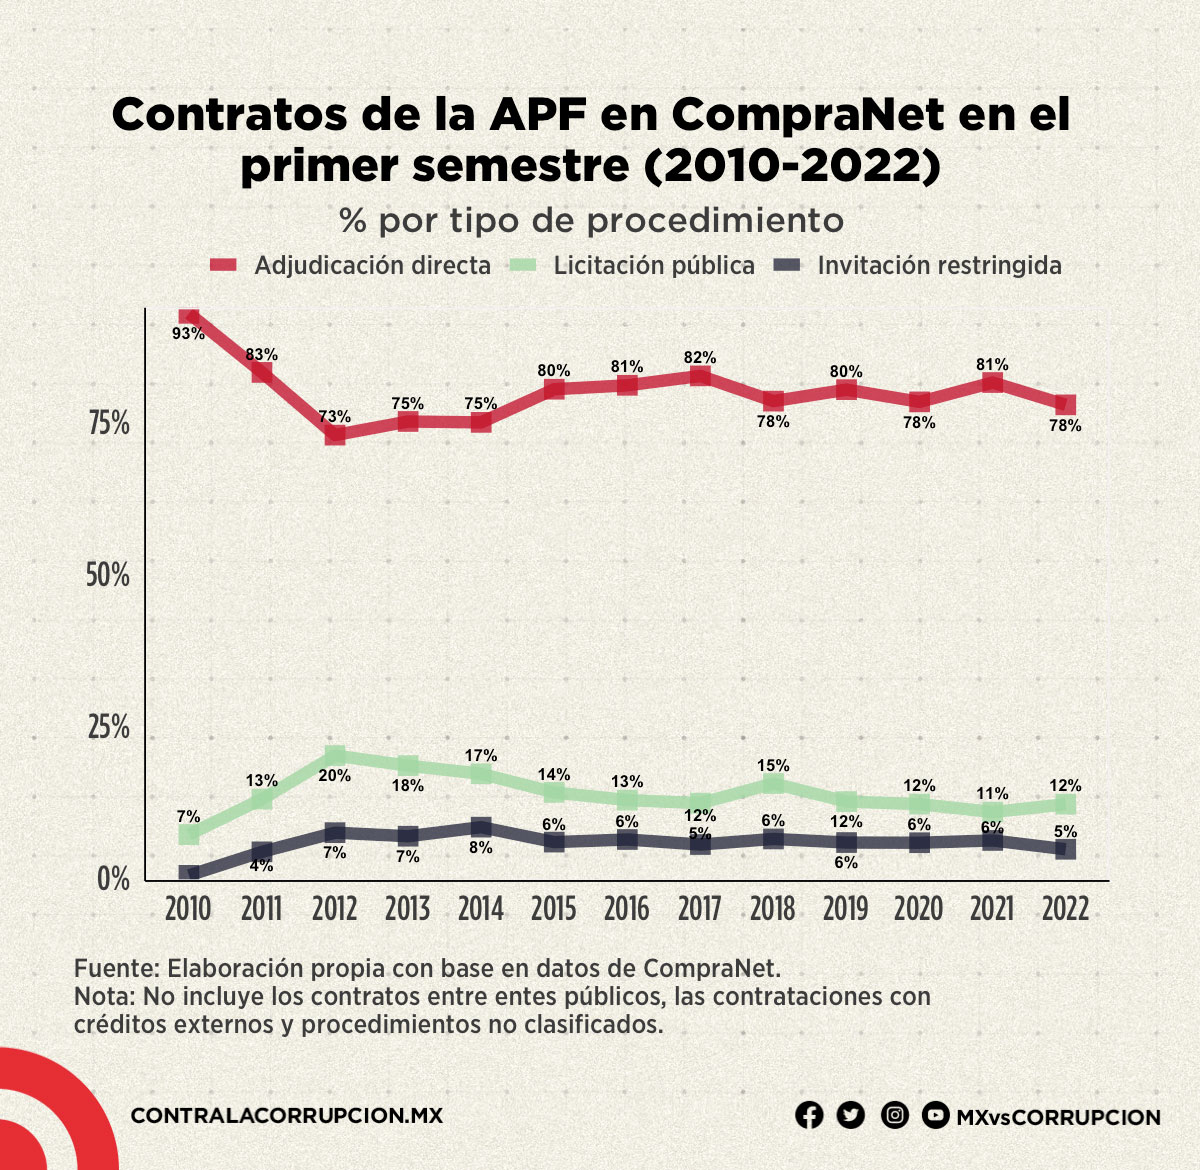 Contratos de la APF en CompraNet en el primer semestre (2010-2022)